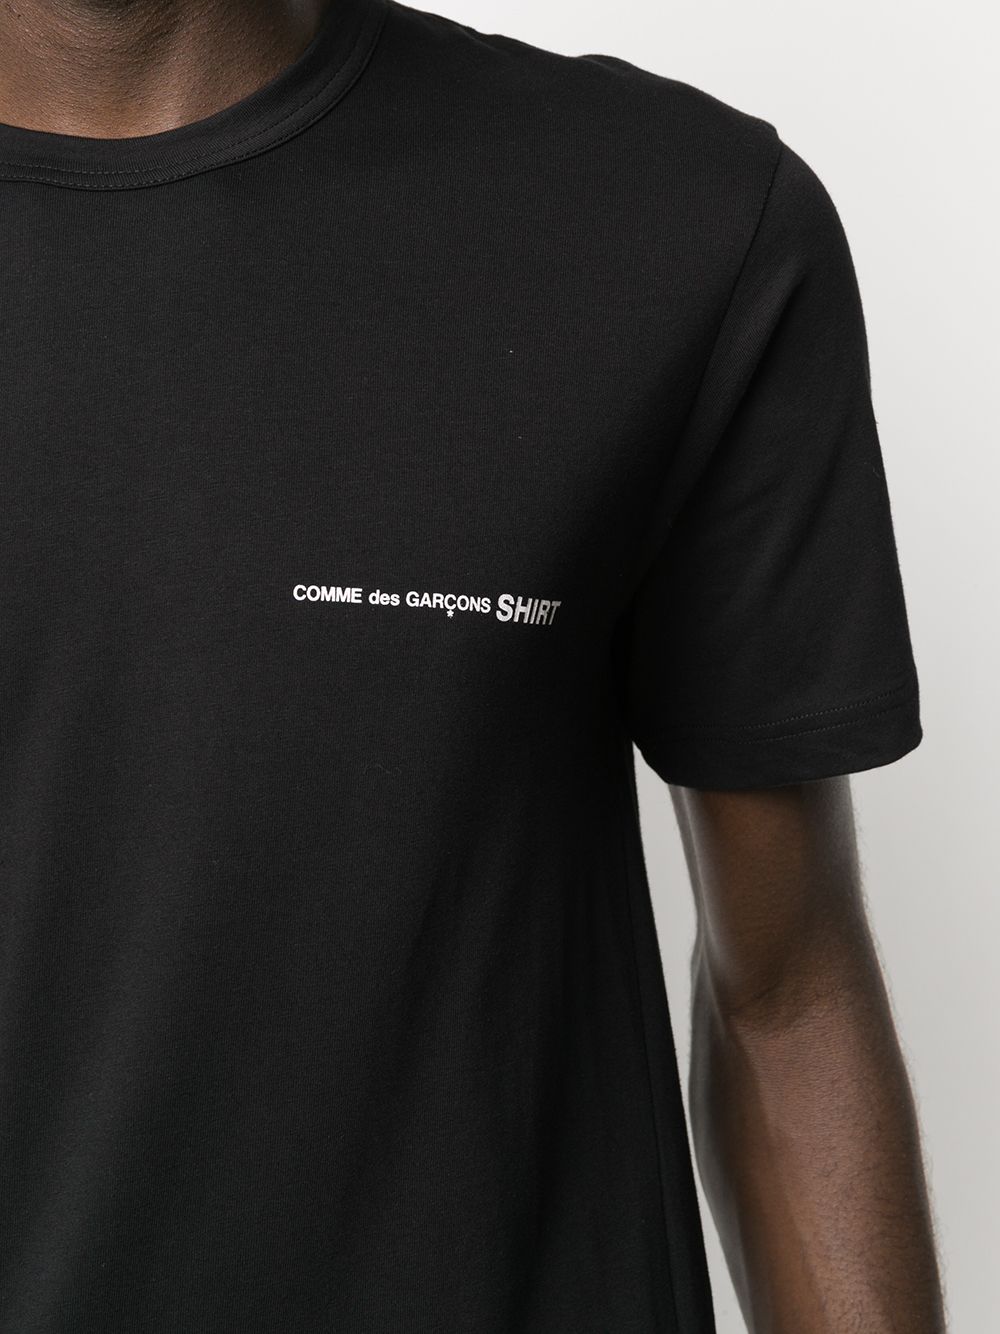 фото Comme des garçons shirt футболка с логотипом